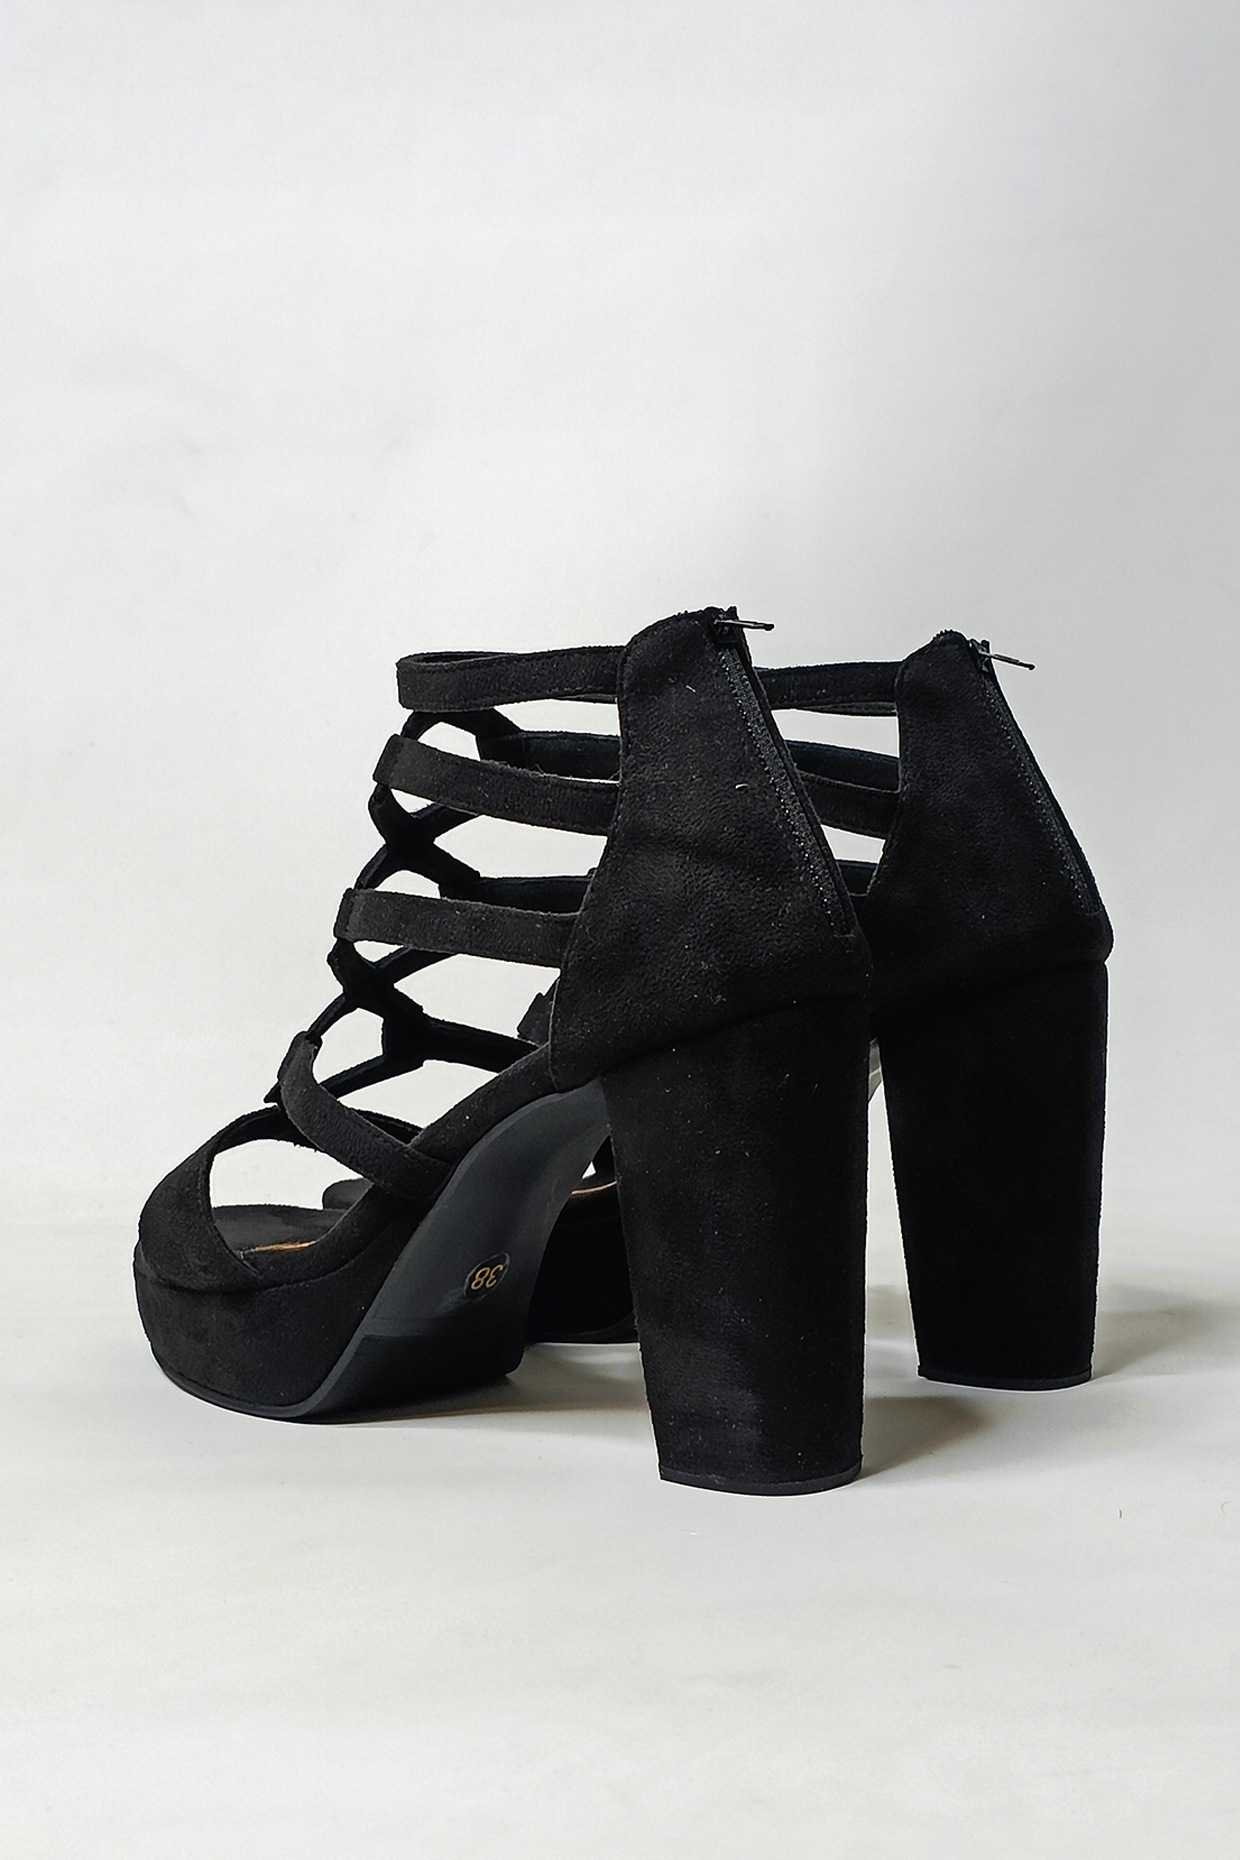 GLADIATOR BLOCK Black Heels | Black Block Heels | Black Slingback Shoes